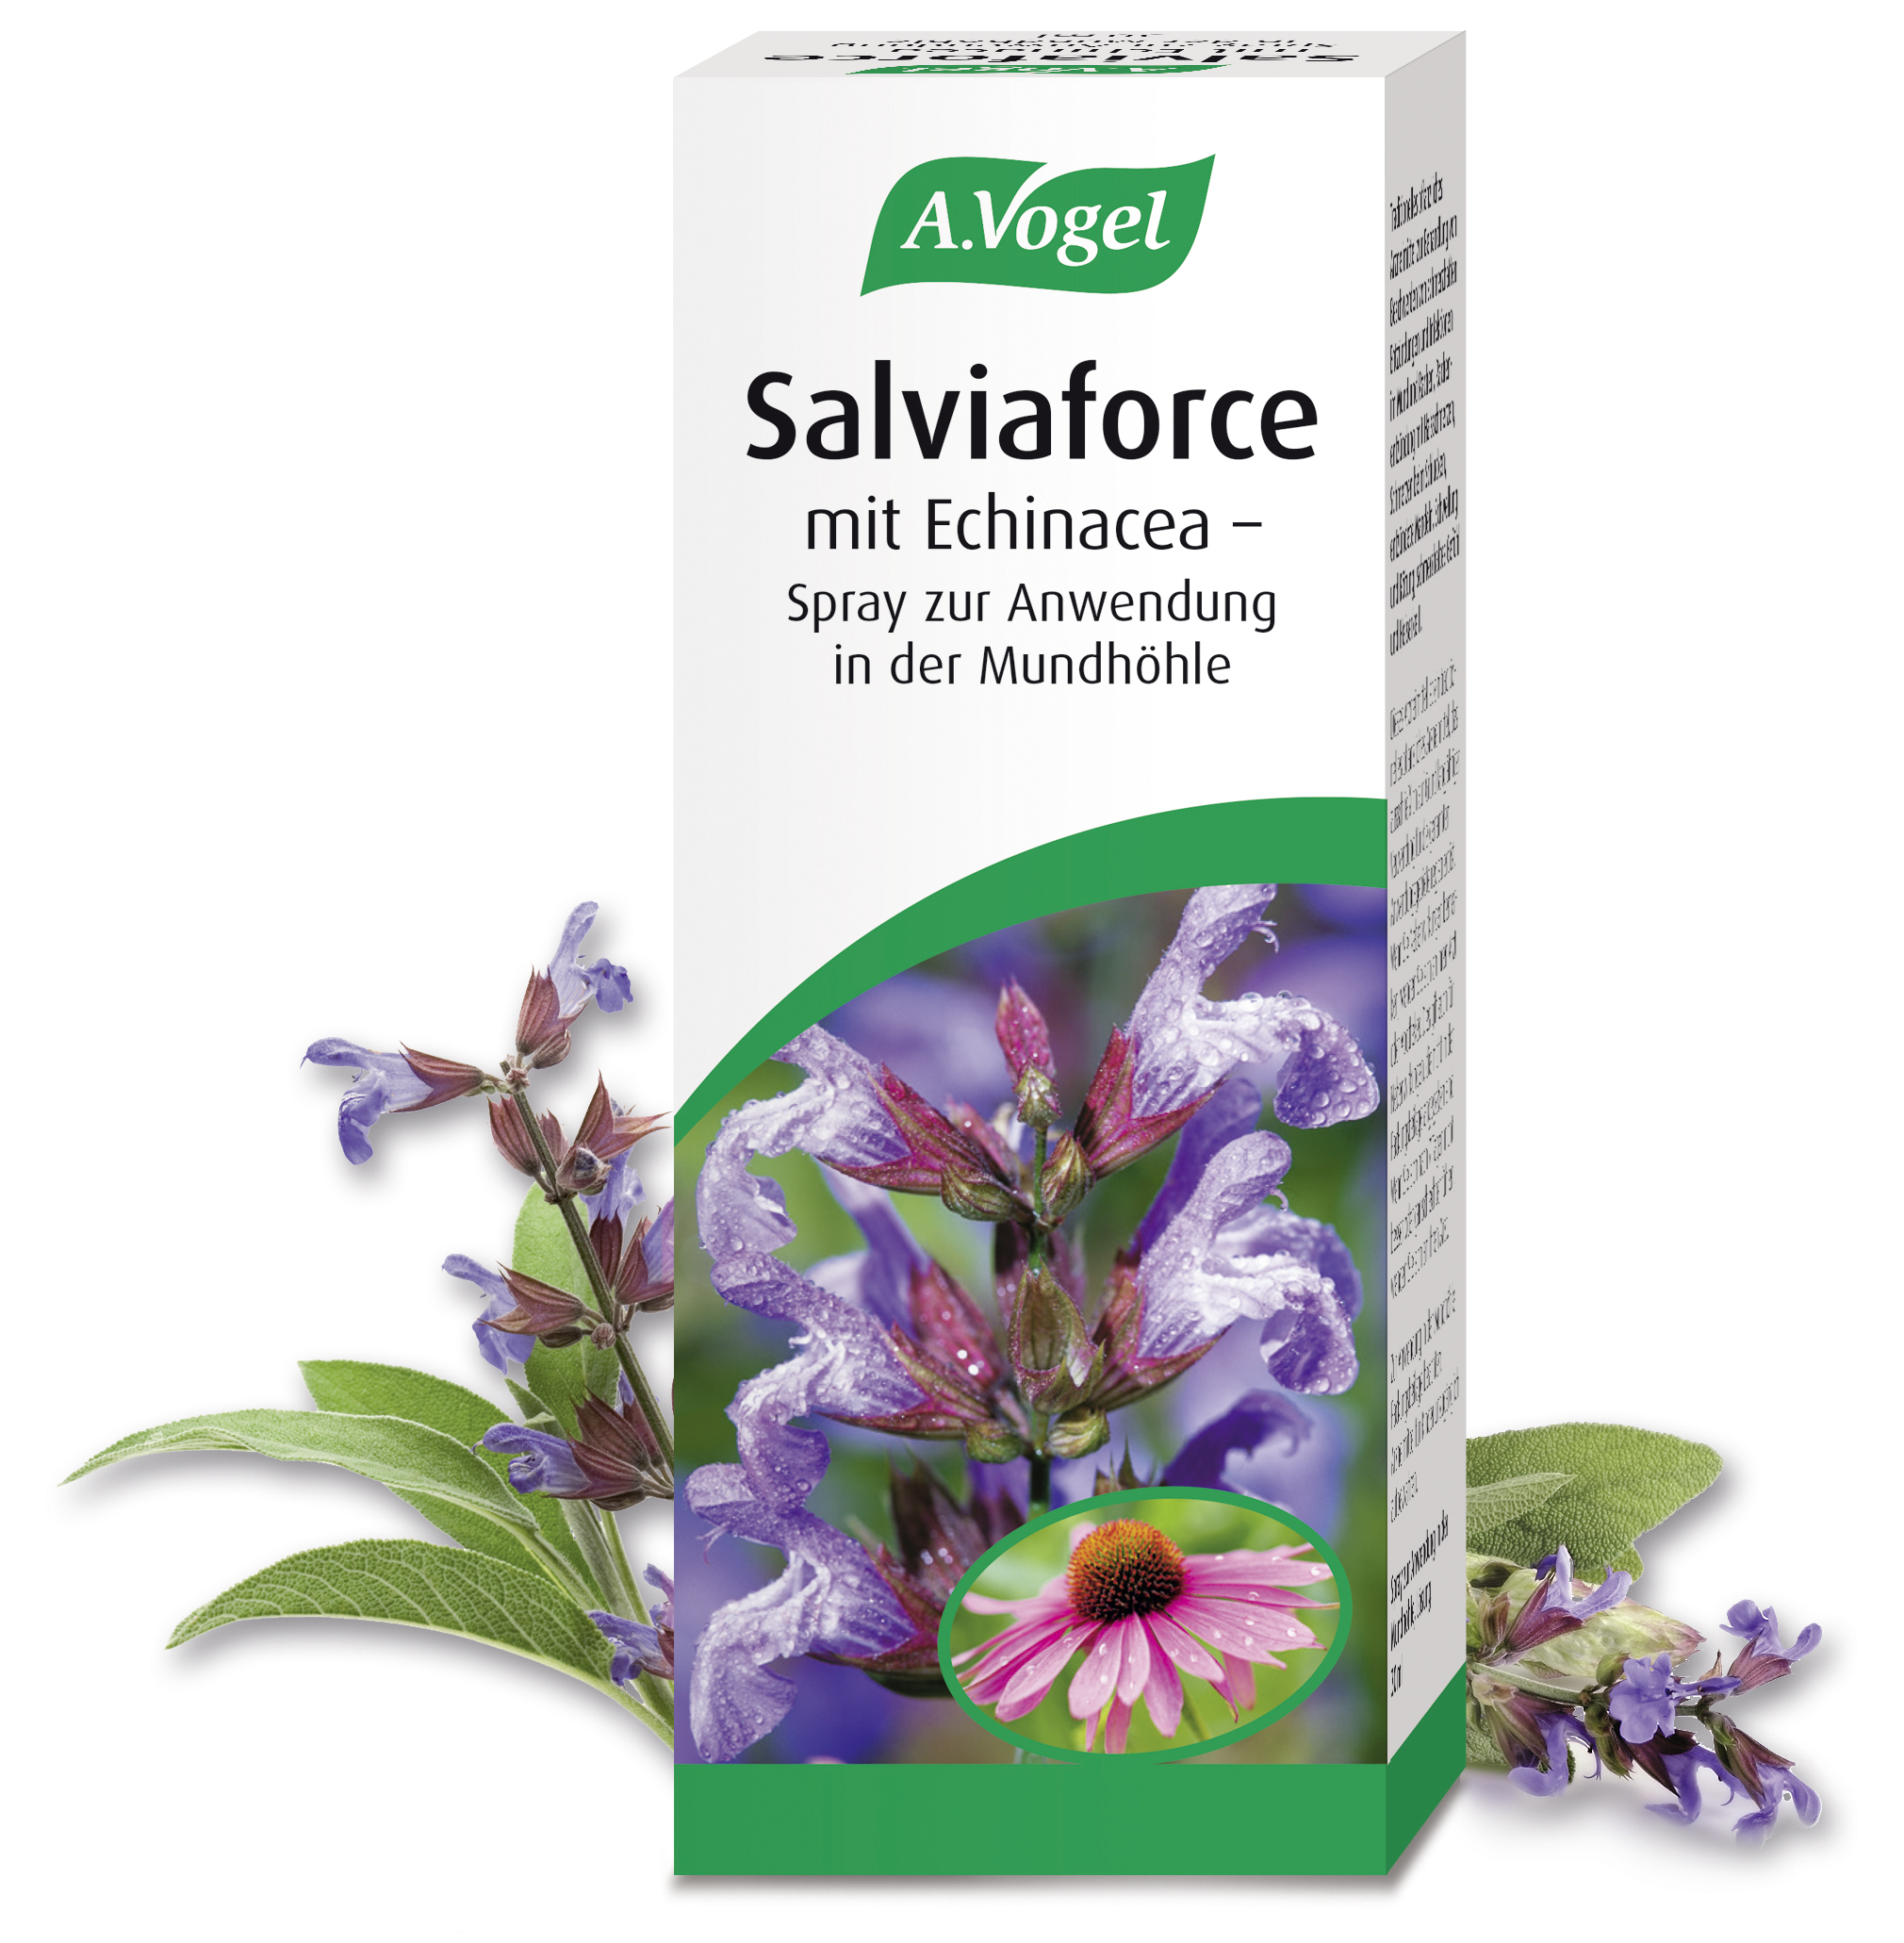 Salviaforce mit Echinacea - Spray zur Anwendung in der Mundhöhle